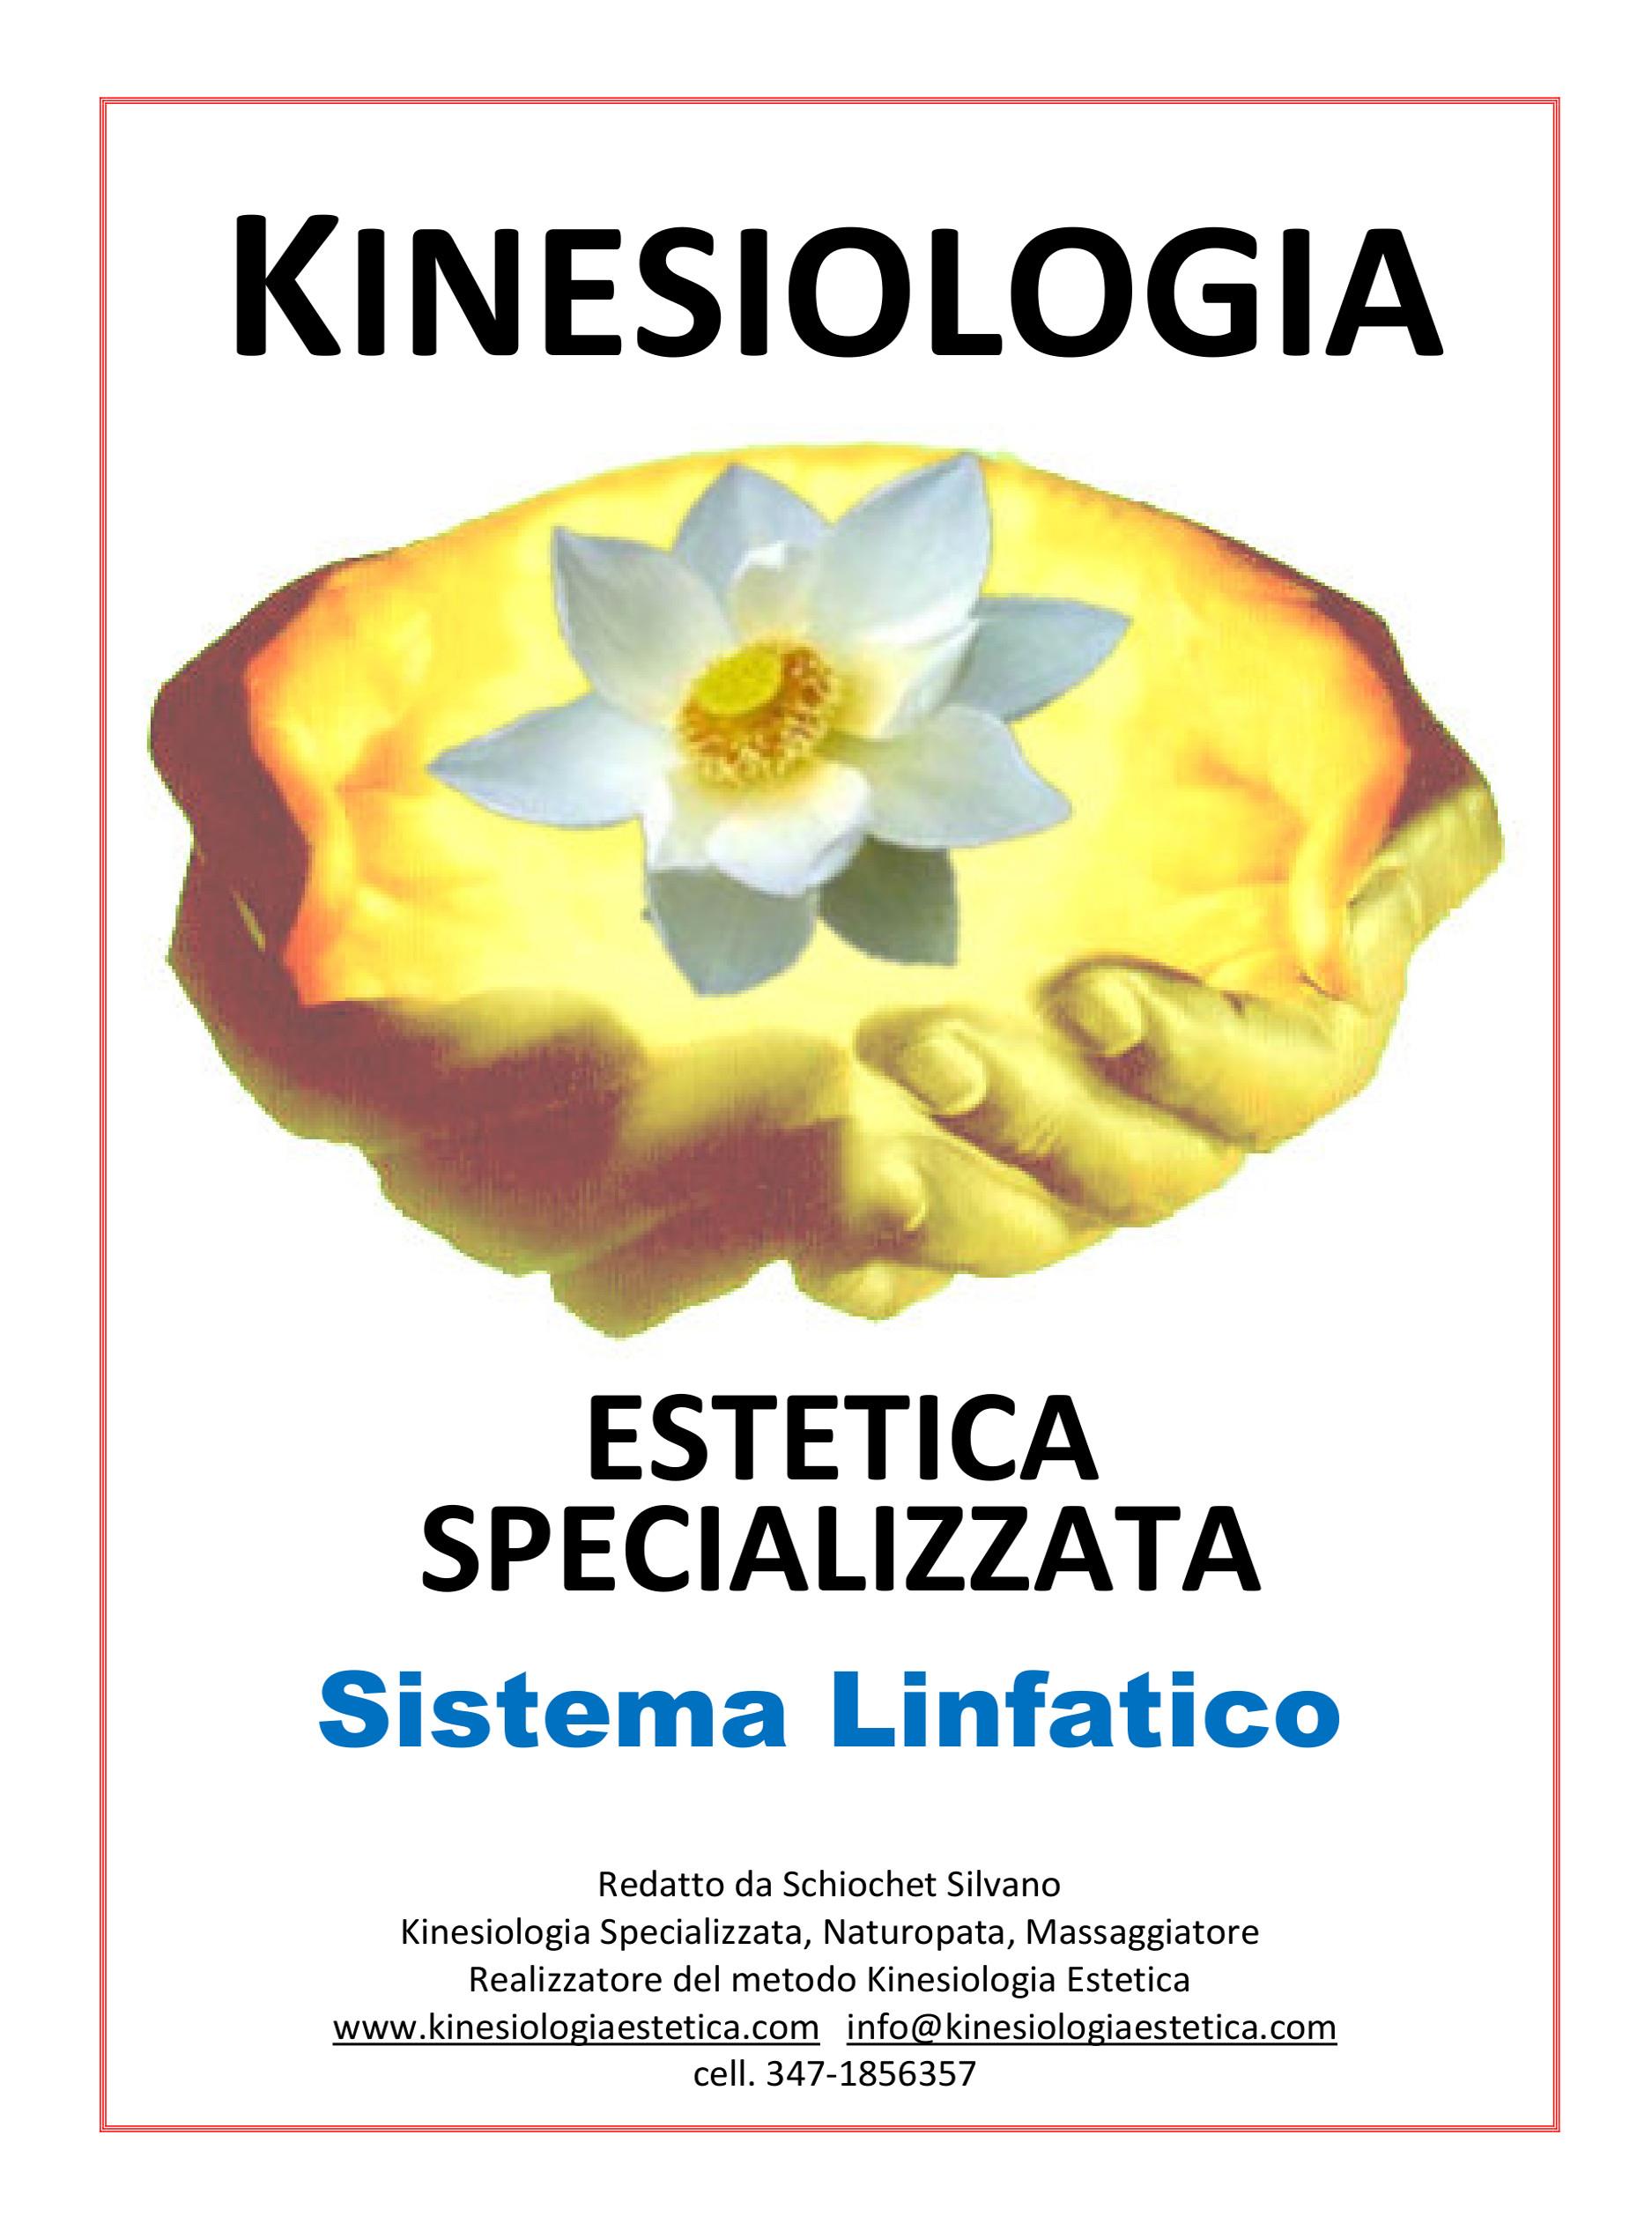 Il Sistema Linfatico con la Kinesiologia Estetica